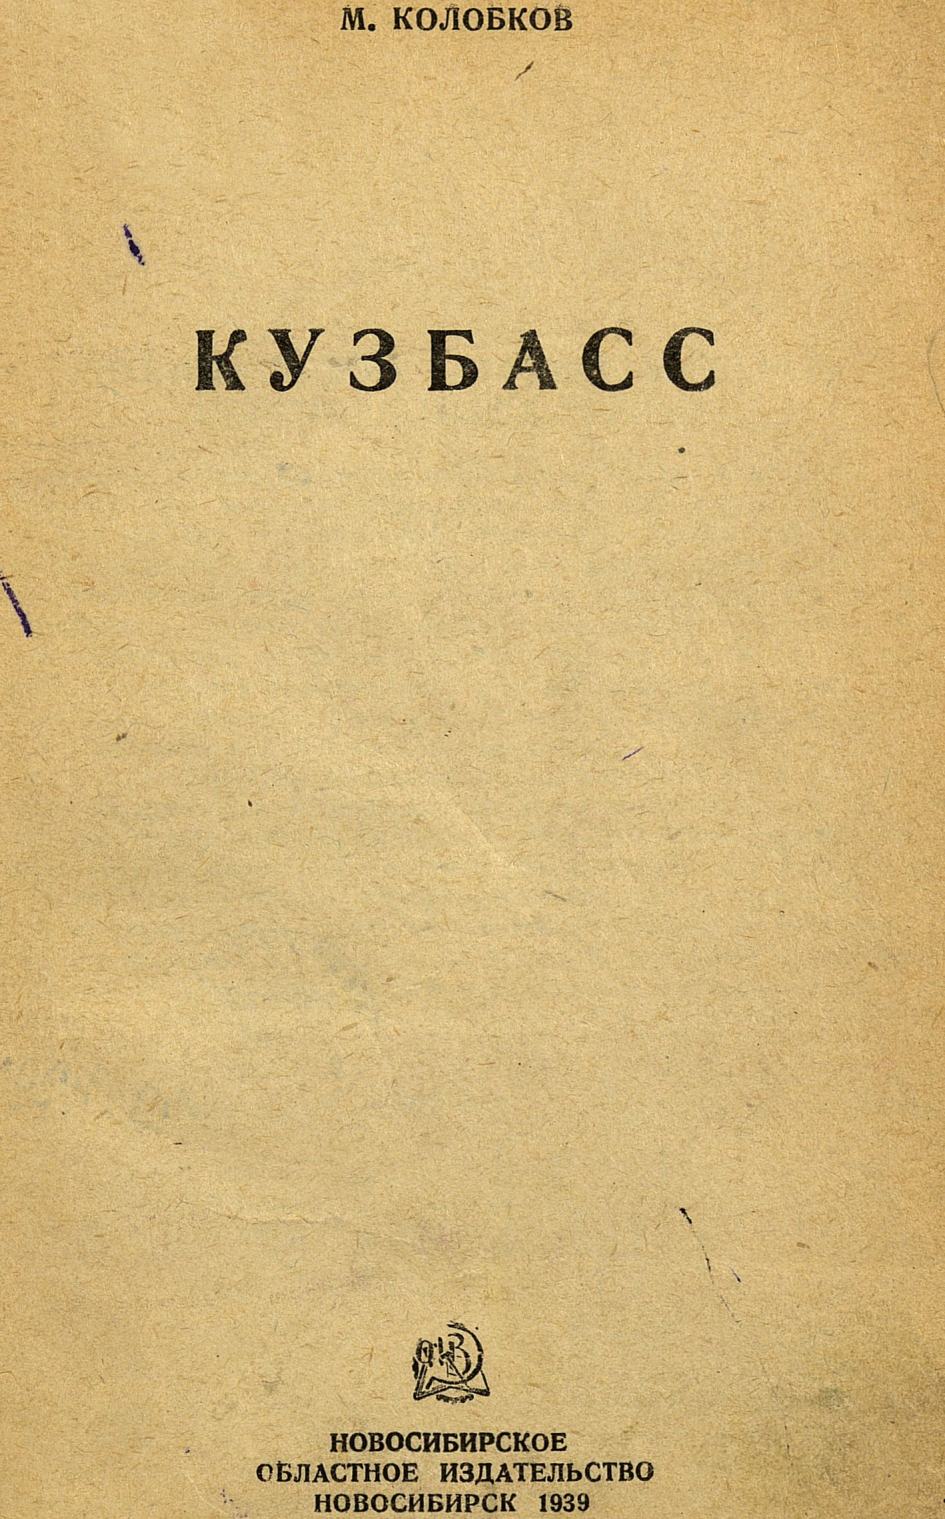 Кузбасс / М. Колобков. — Новосибирск : Новосибирское областное издательство, 1939